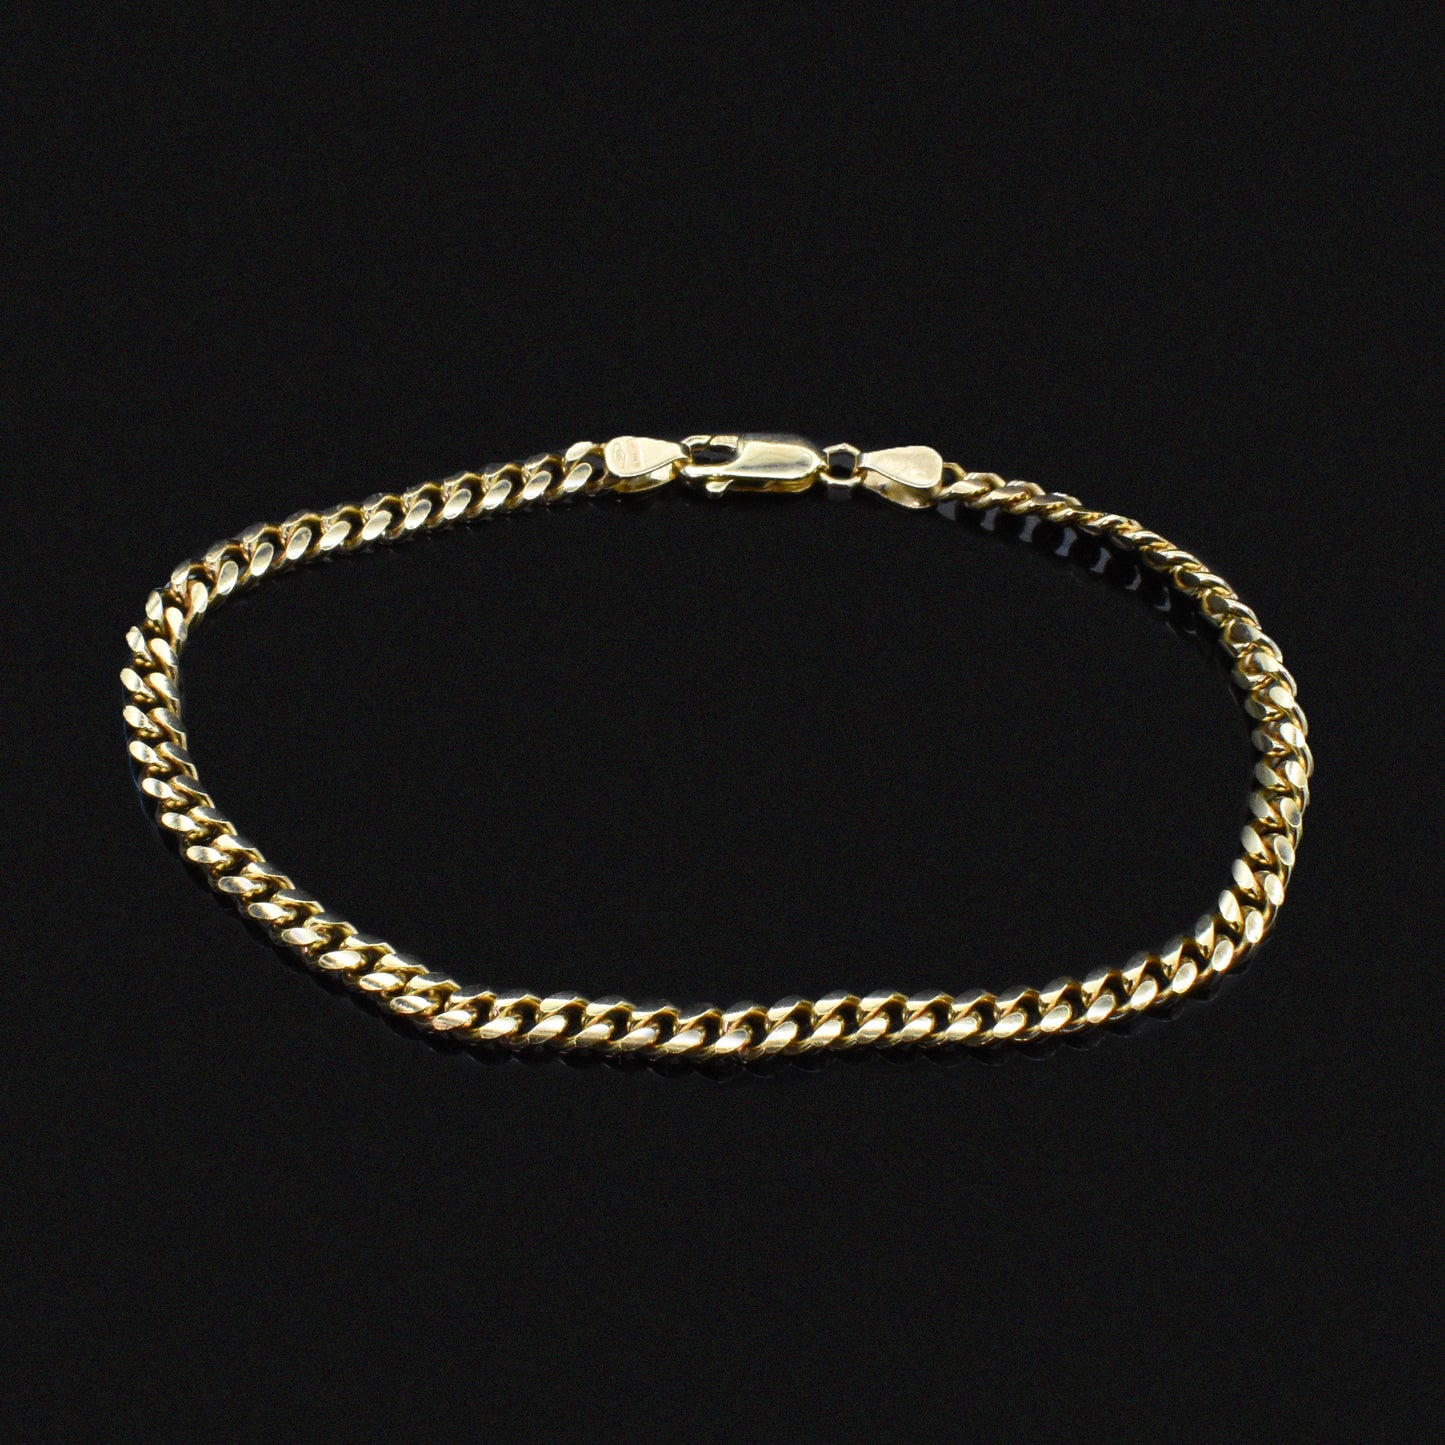 cuban chain bracelet unisex yellow gold for him men